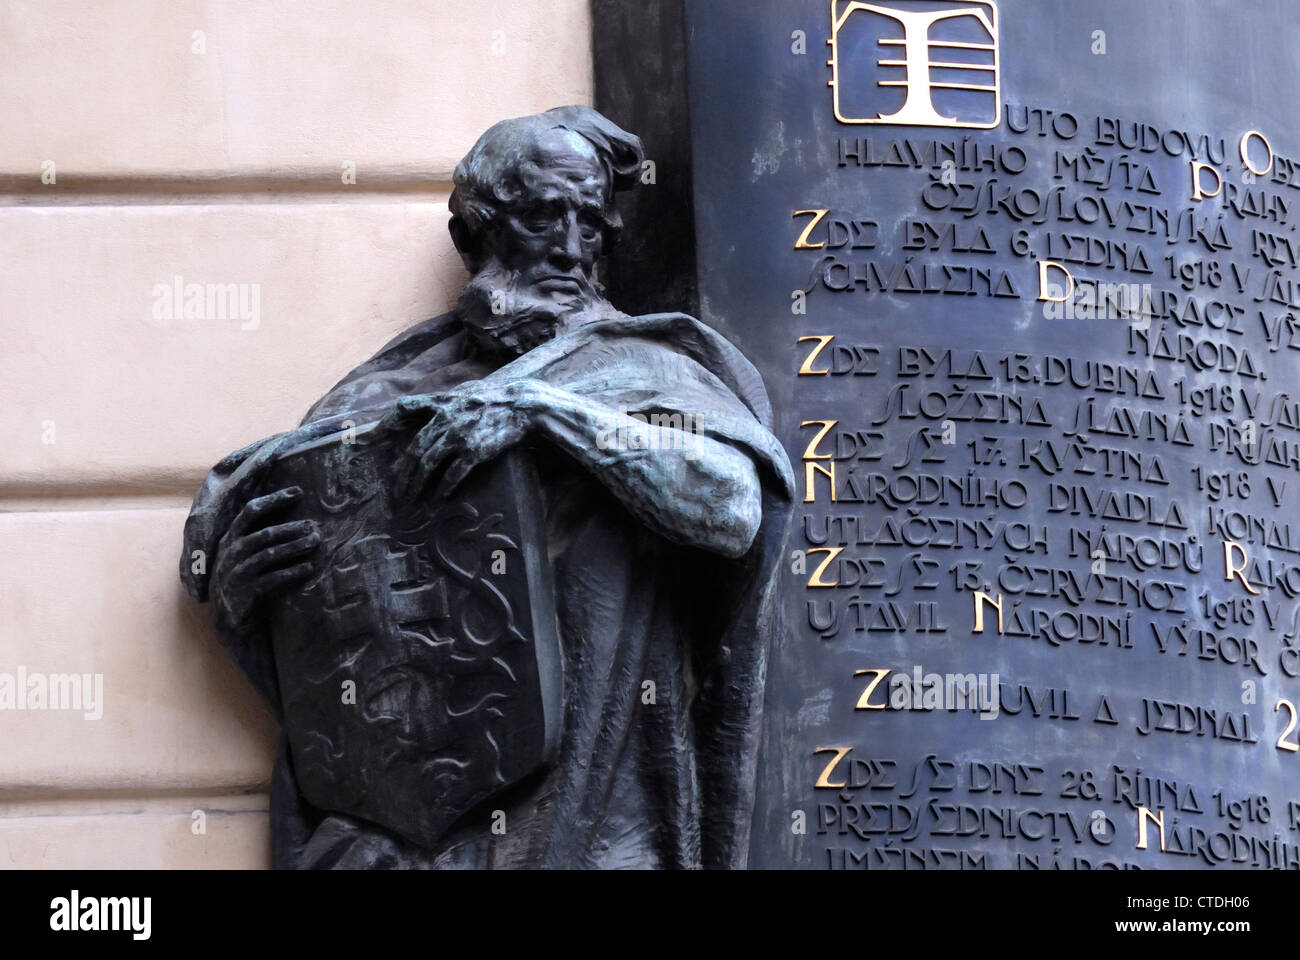 Prag, Tschechische Republik. Obecni Dum (1906-12) Bronze-Figur und Gedenktafel 28. Oktober 1918 - siehe "Beschreibung" Stockfoto